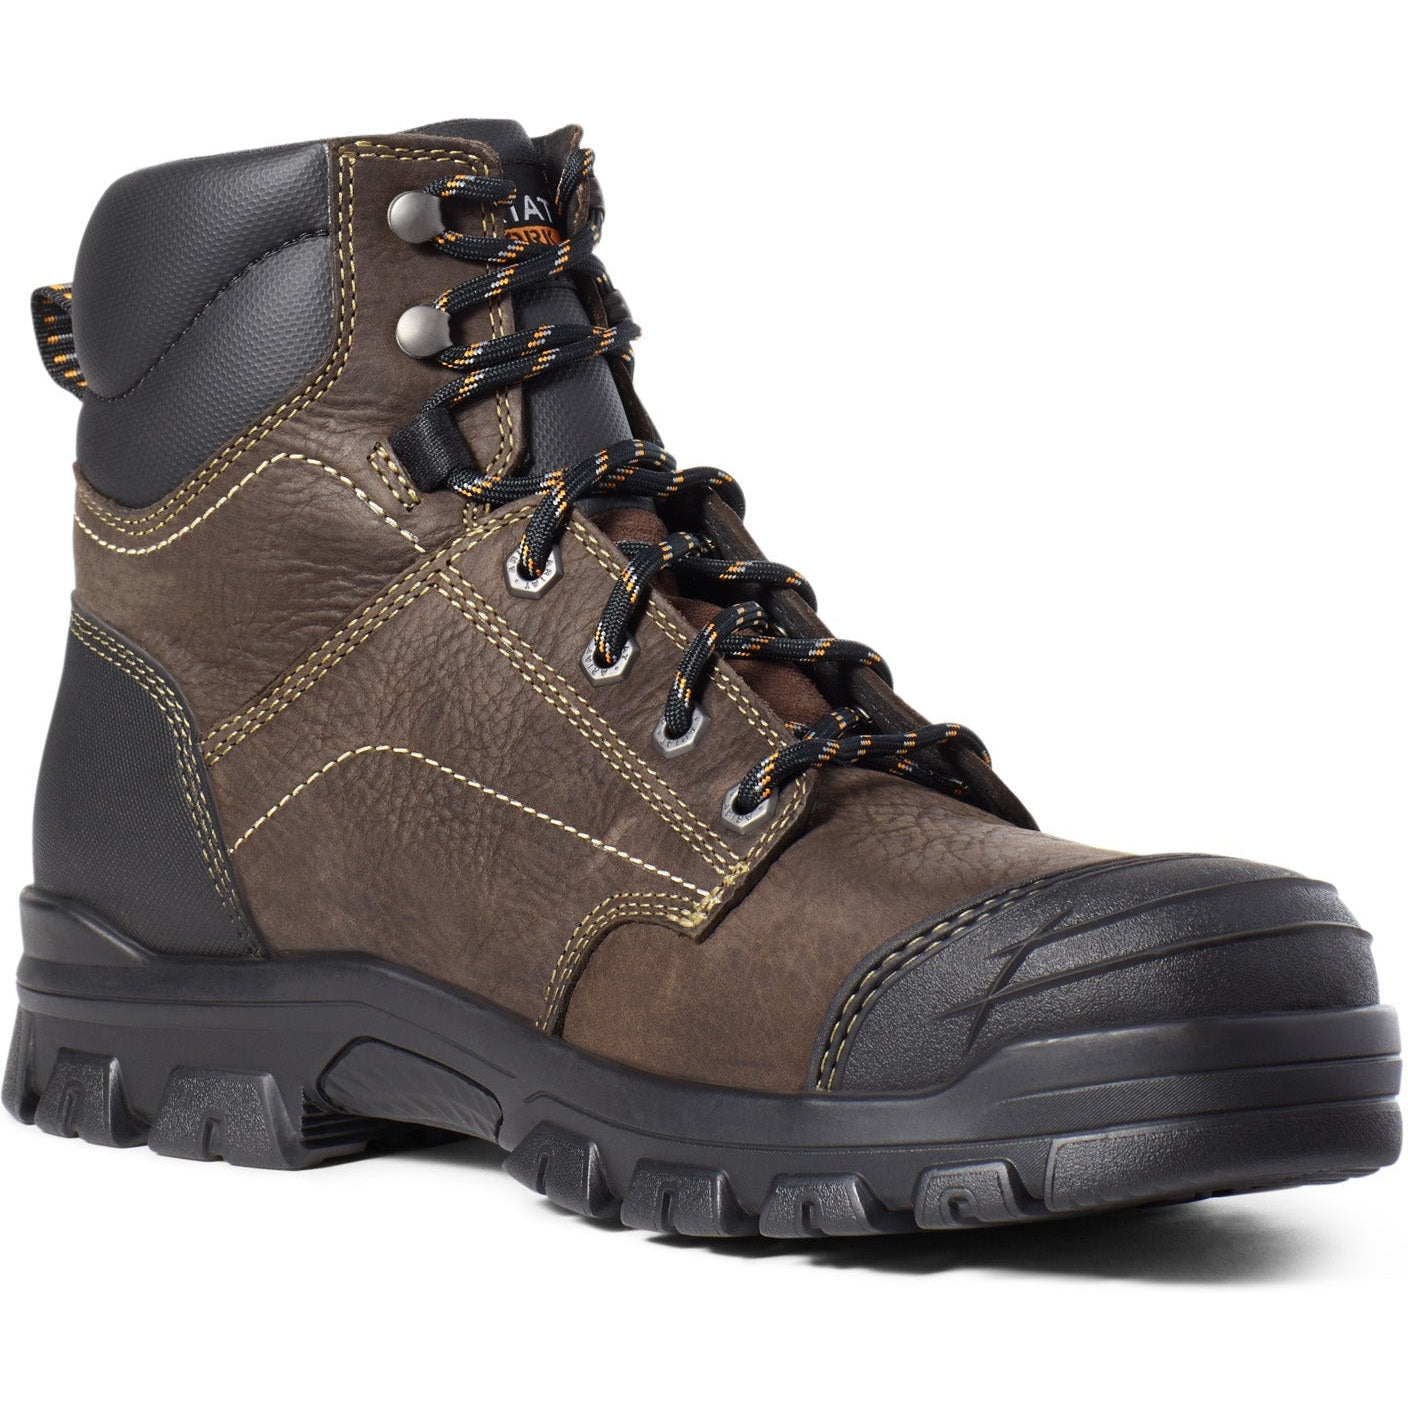 Ariat Men's Treadfast 6" Steel Toe WP Work Boot - Brown - 10034673 6 / Wide / Dark Brown - Overlook Boots